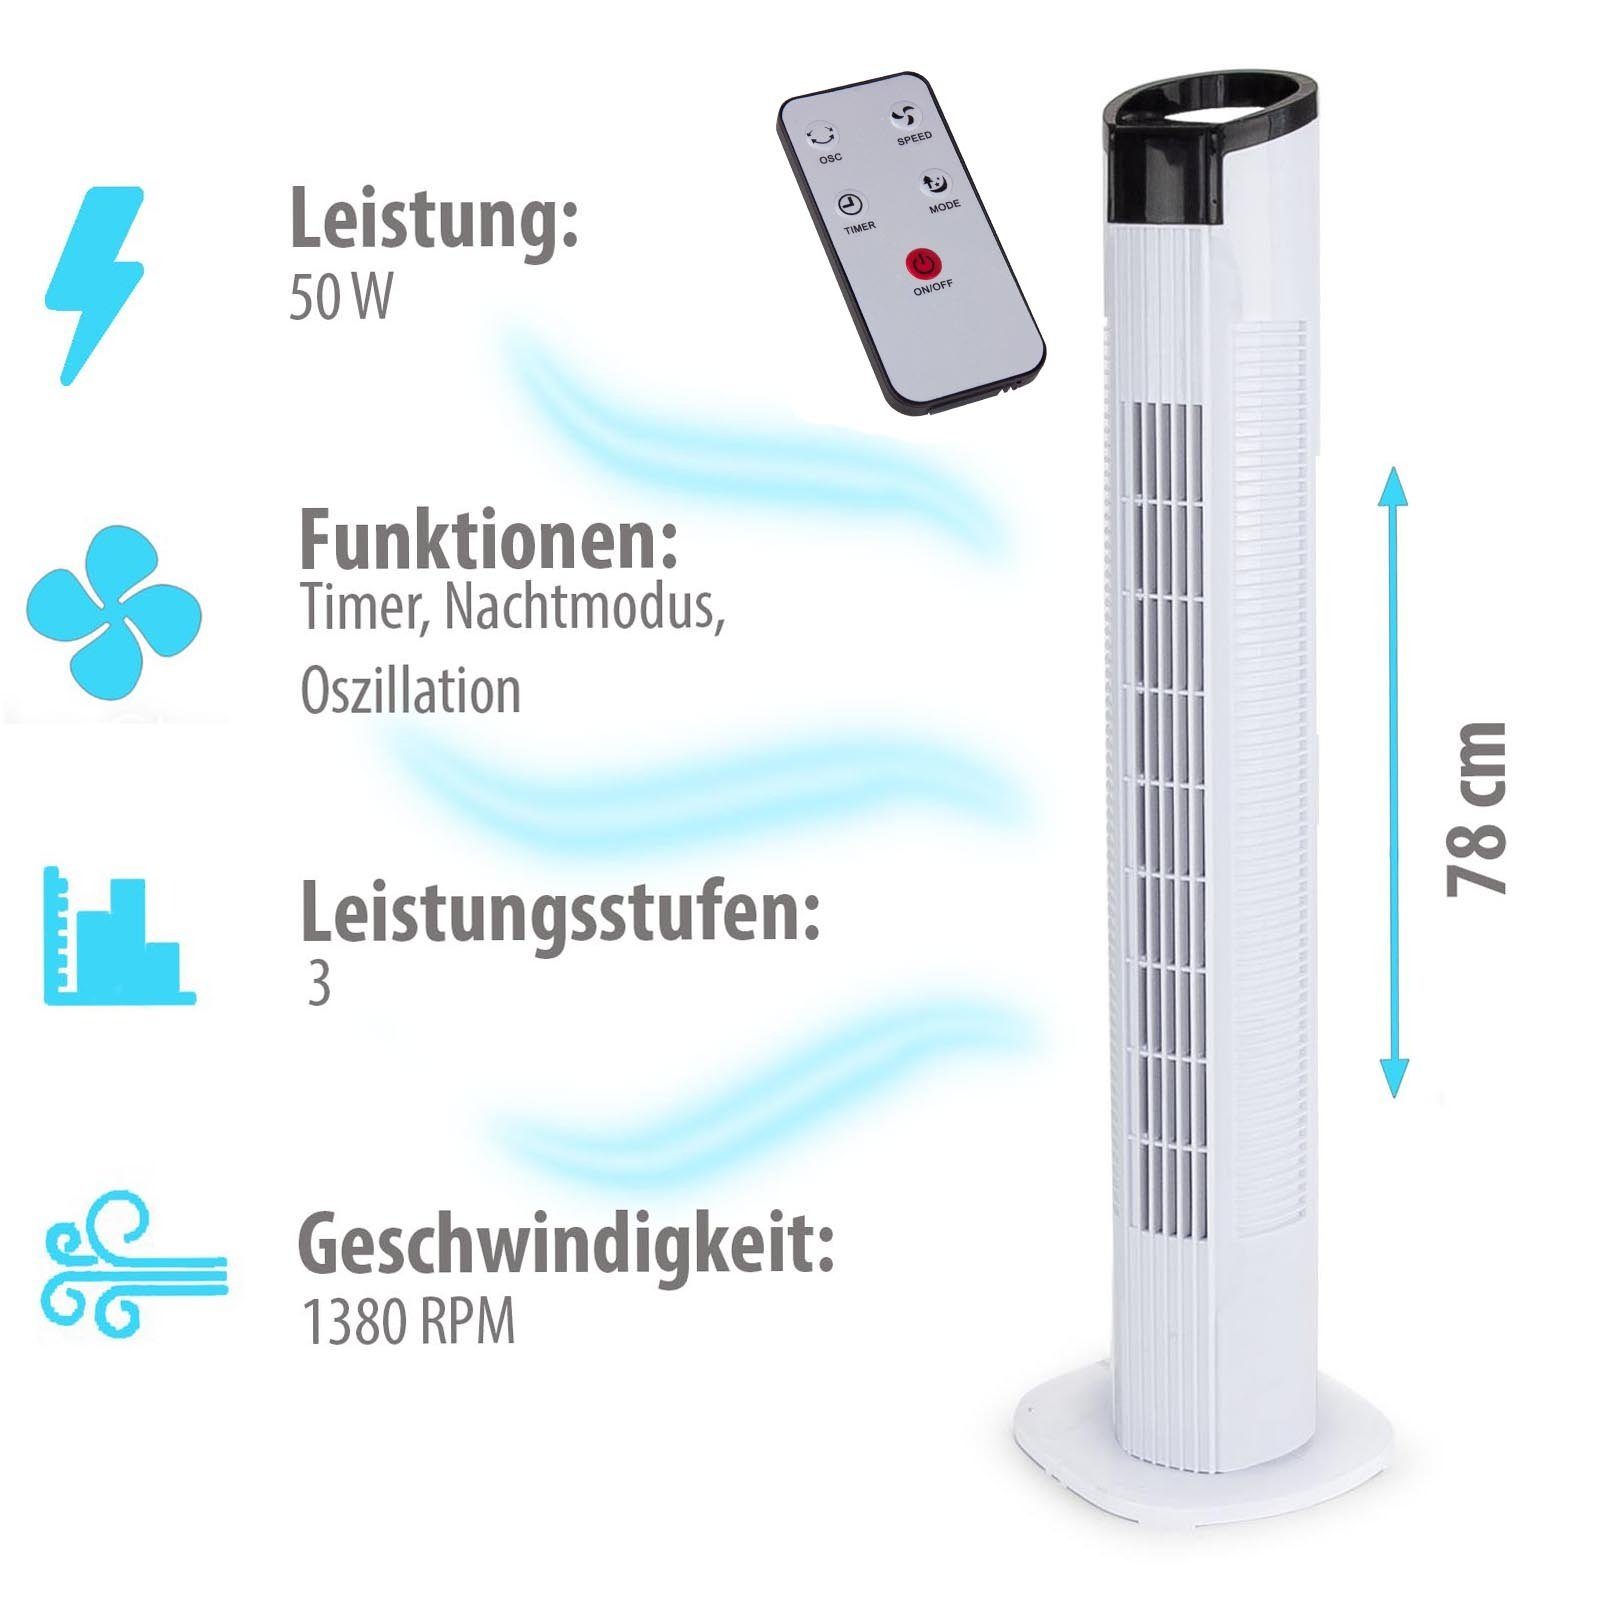 Grafner Turmventilator Grafner® Turmventilator mit Fernbedienung und Schwenkfunktion, 3 Modi (Nature, Sleep, Normal) - Fernbedienung - leise